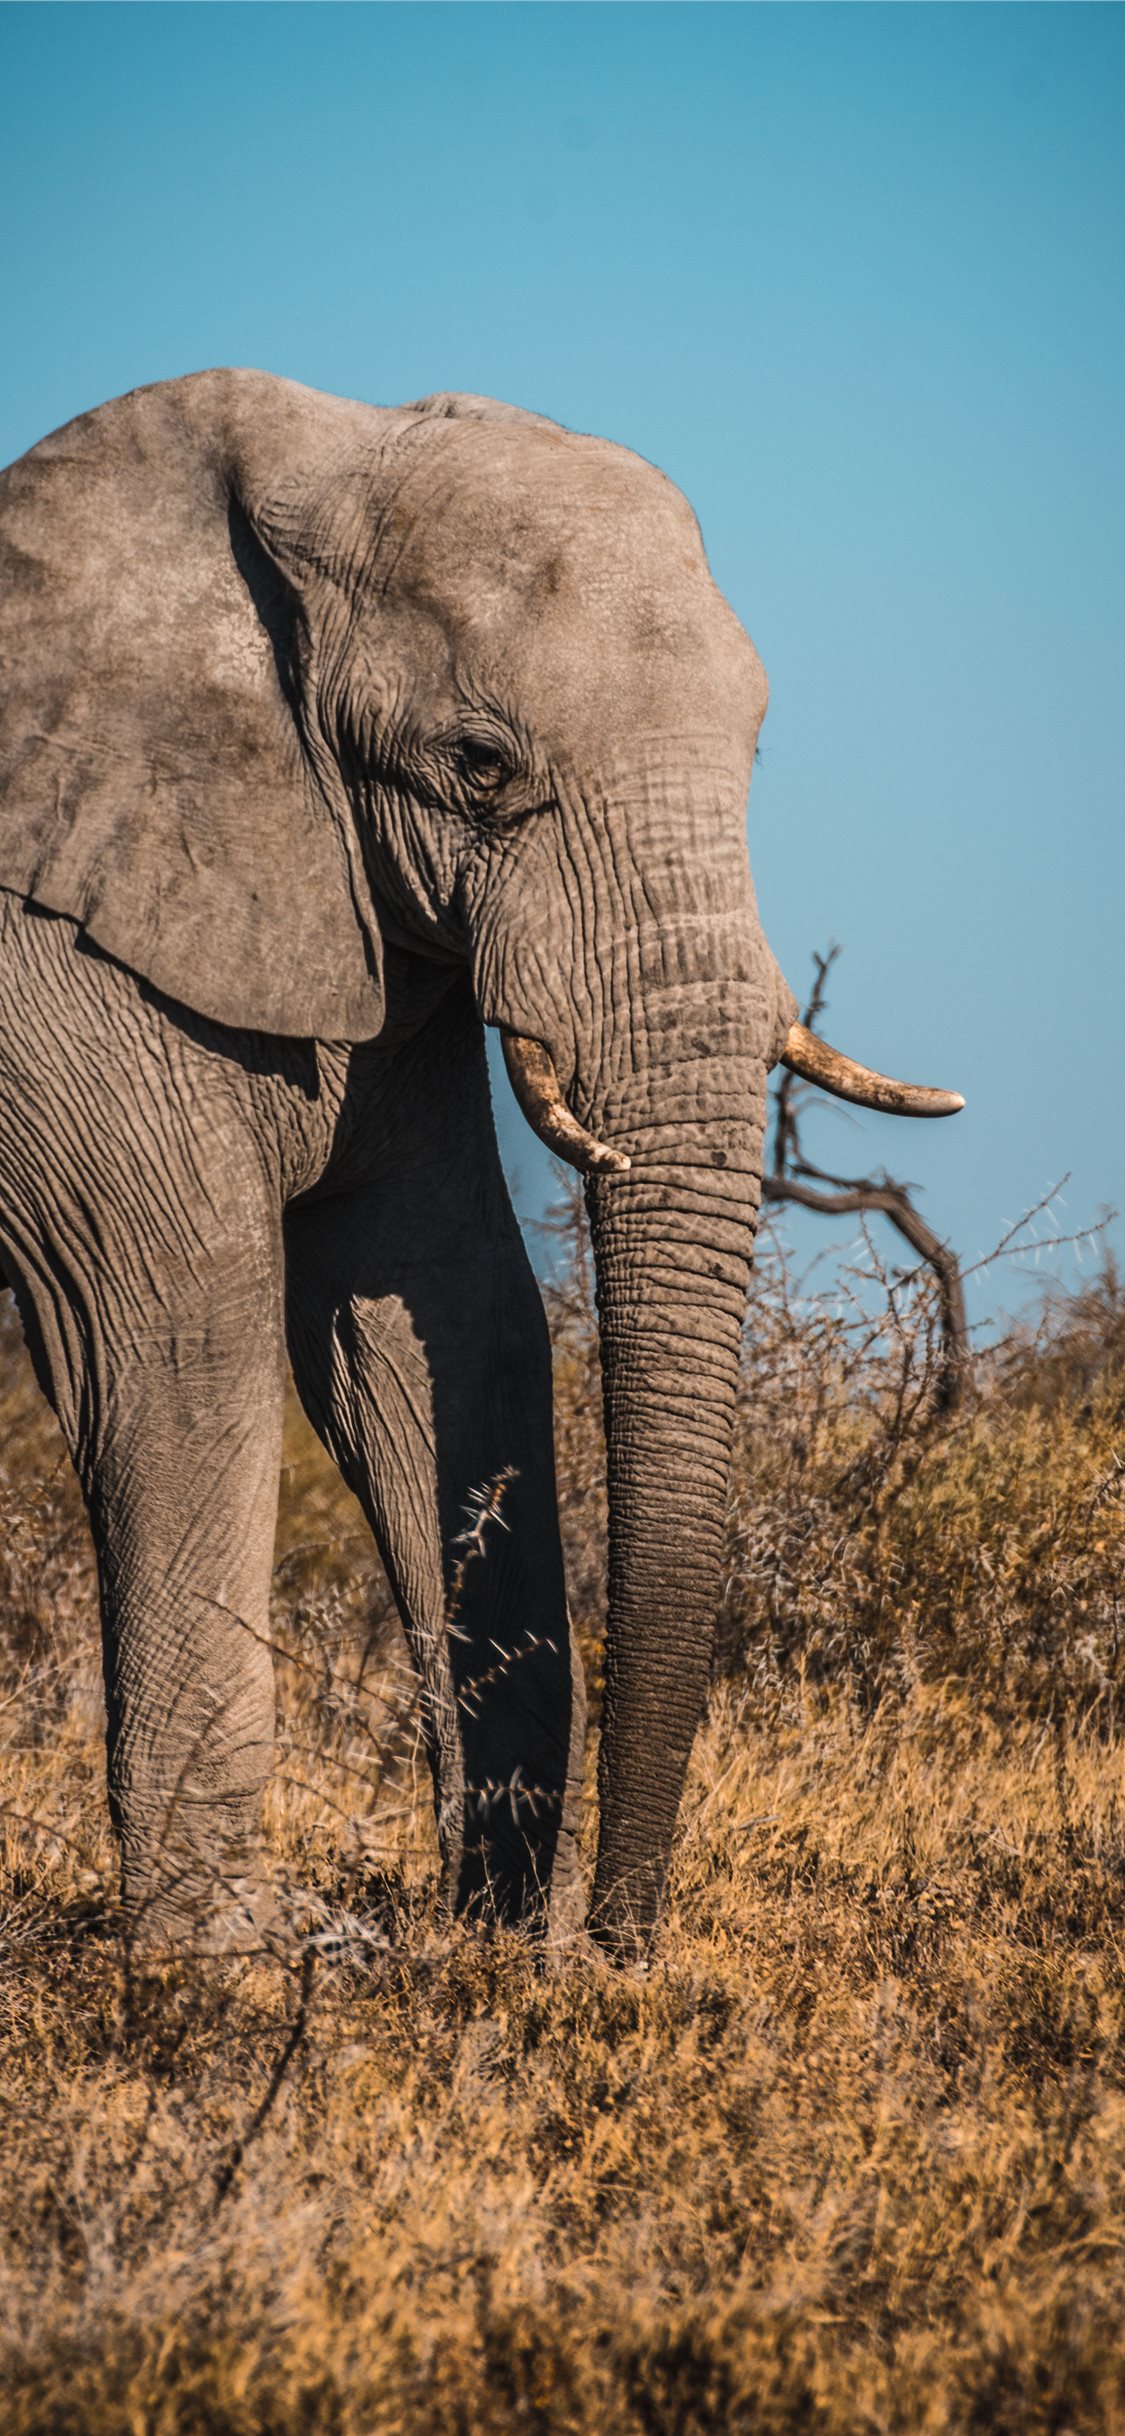 Etosha National Park tọa lạc tại Namibia, châu Phi với những khung cảnh đẹp tuyệt vời và đa dạng sinh học phong phú. Nhấn xem hình ảnh liên quan để khám phá vẻ đẹp của công viên quốc gia này và những động vật hoang dã sinh sống tại đó.